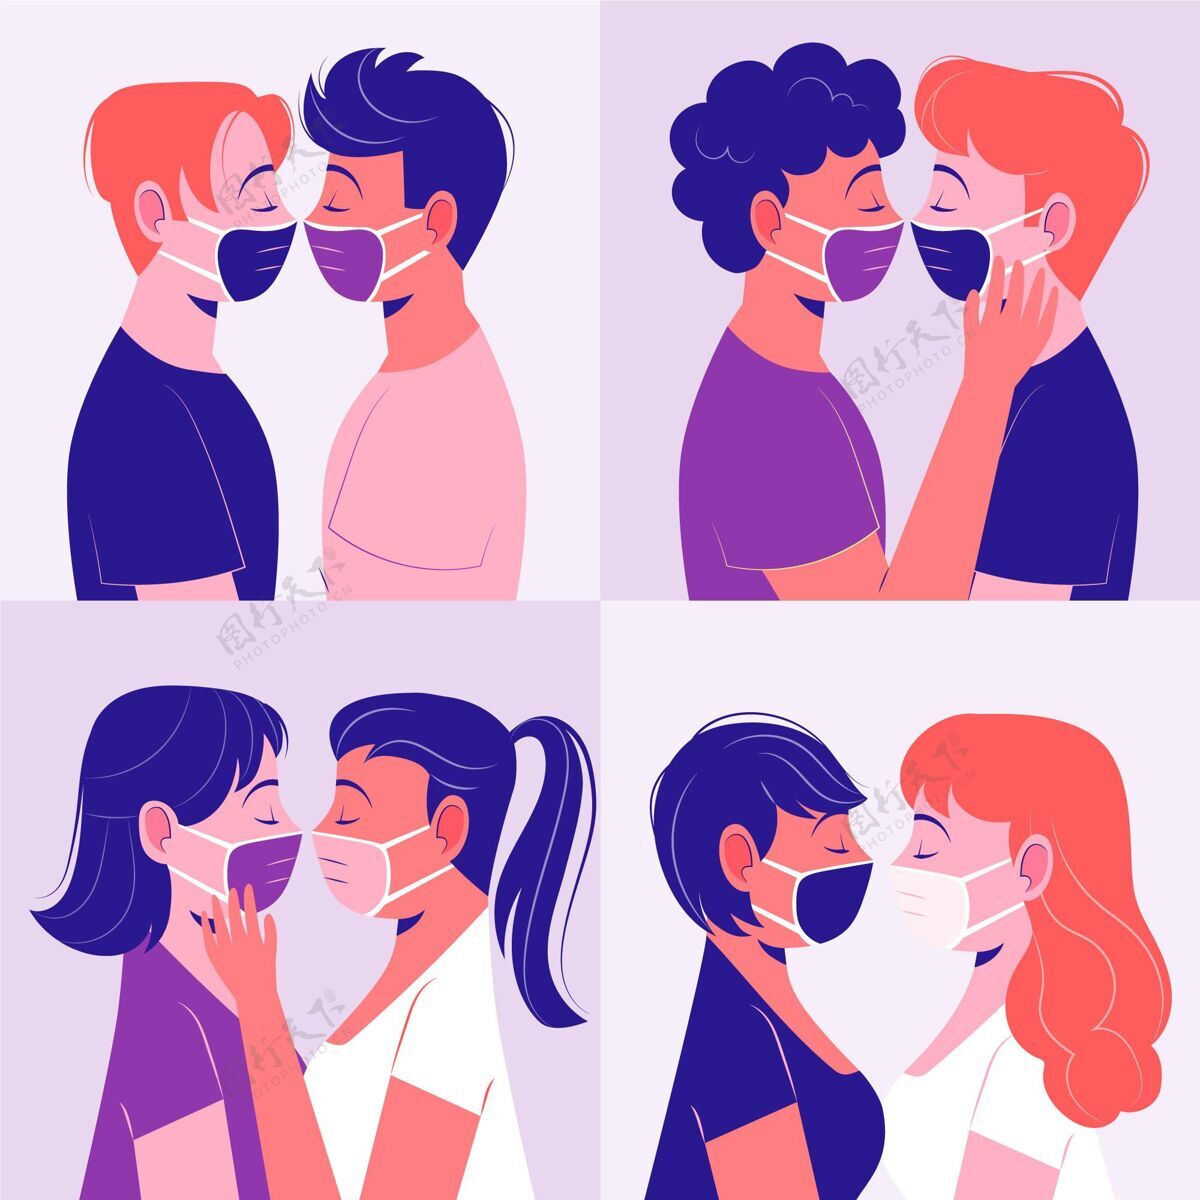 流感国际接吻日插画面具亲吻事件